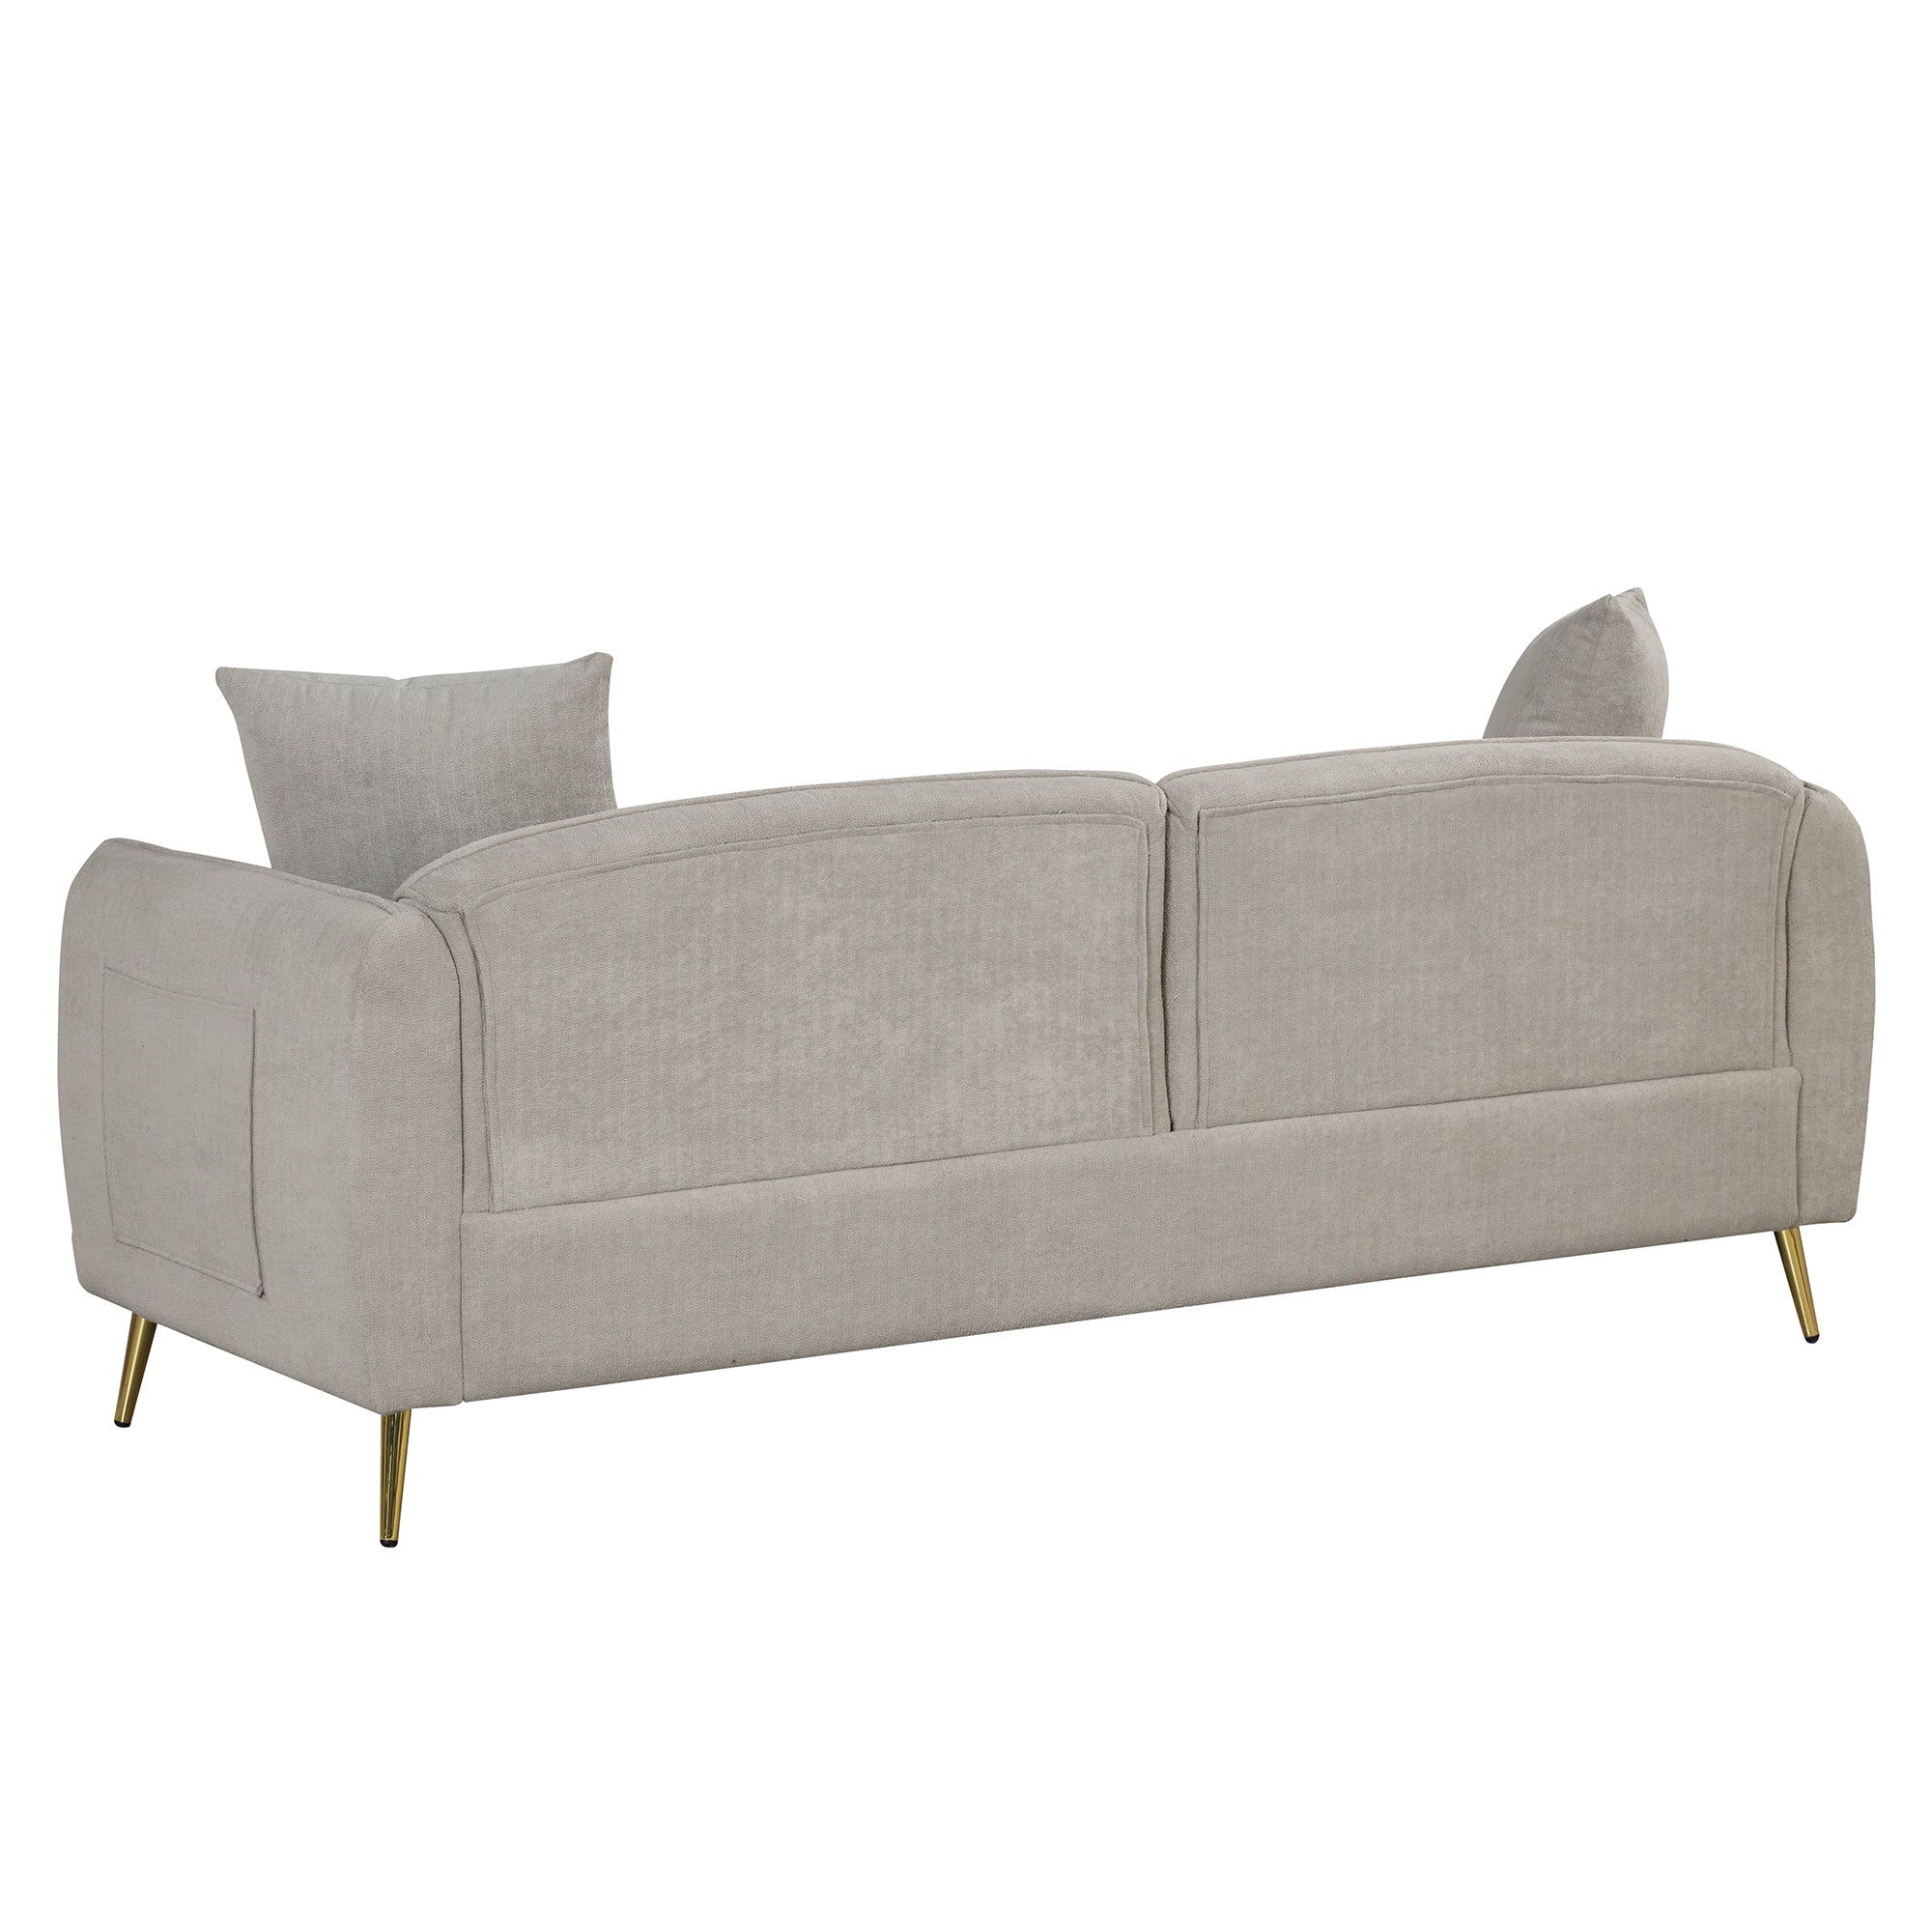 Velvet Upholstery Sofa Couch